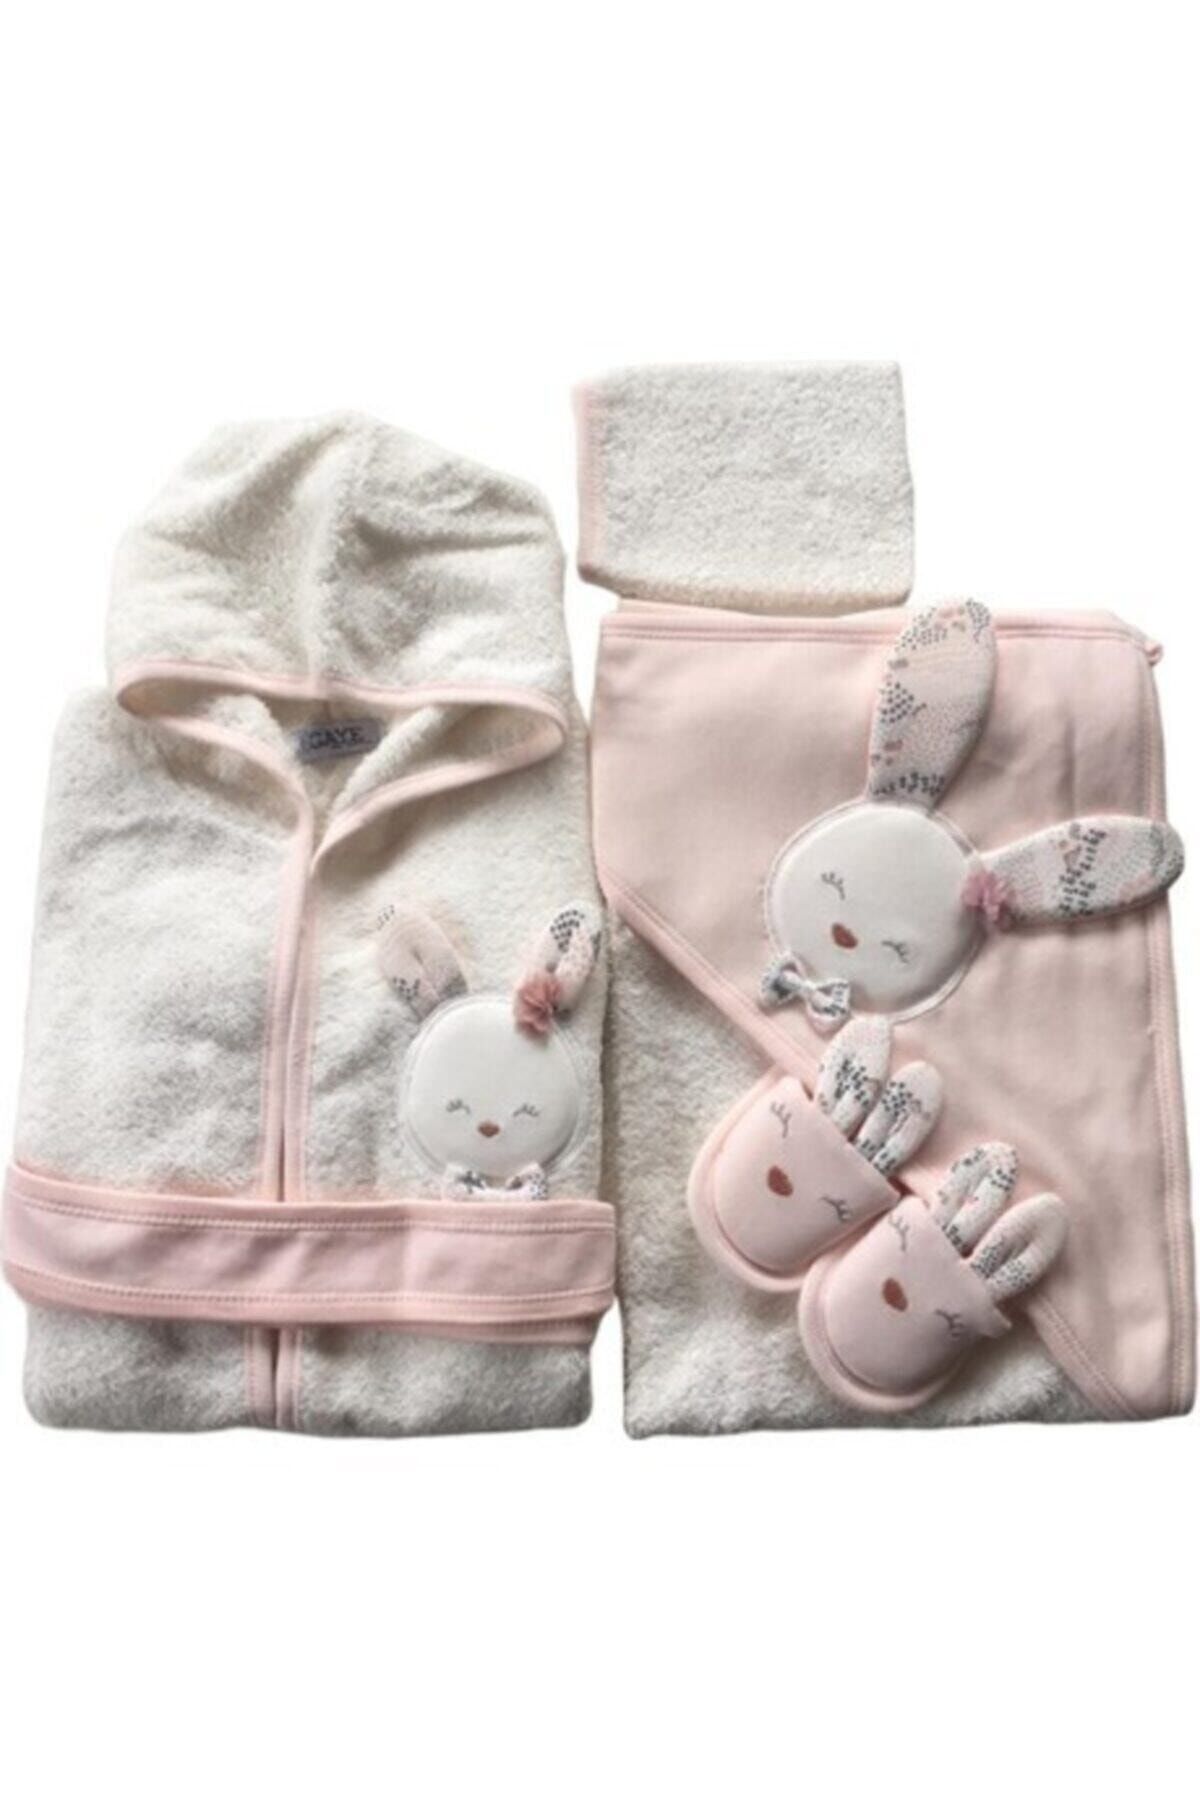 Genel Markalar Kız Bebek Sevimli Tavşan Havlu Bornoz Takımı Somon S100826